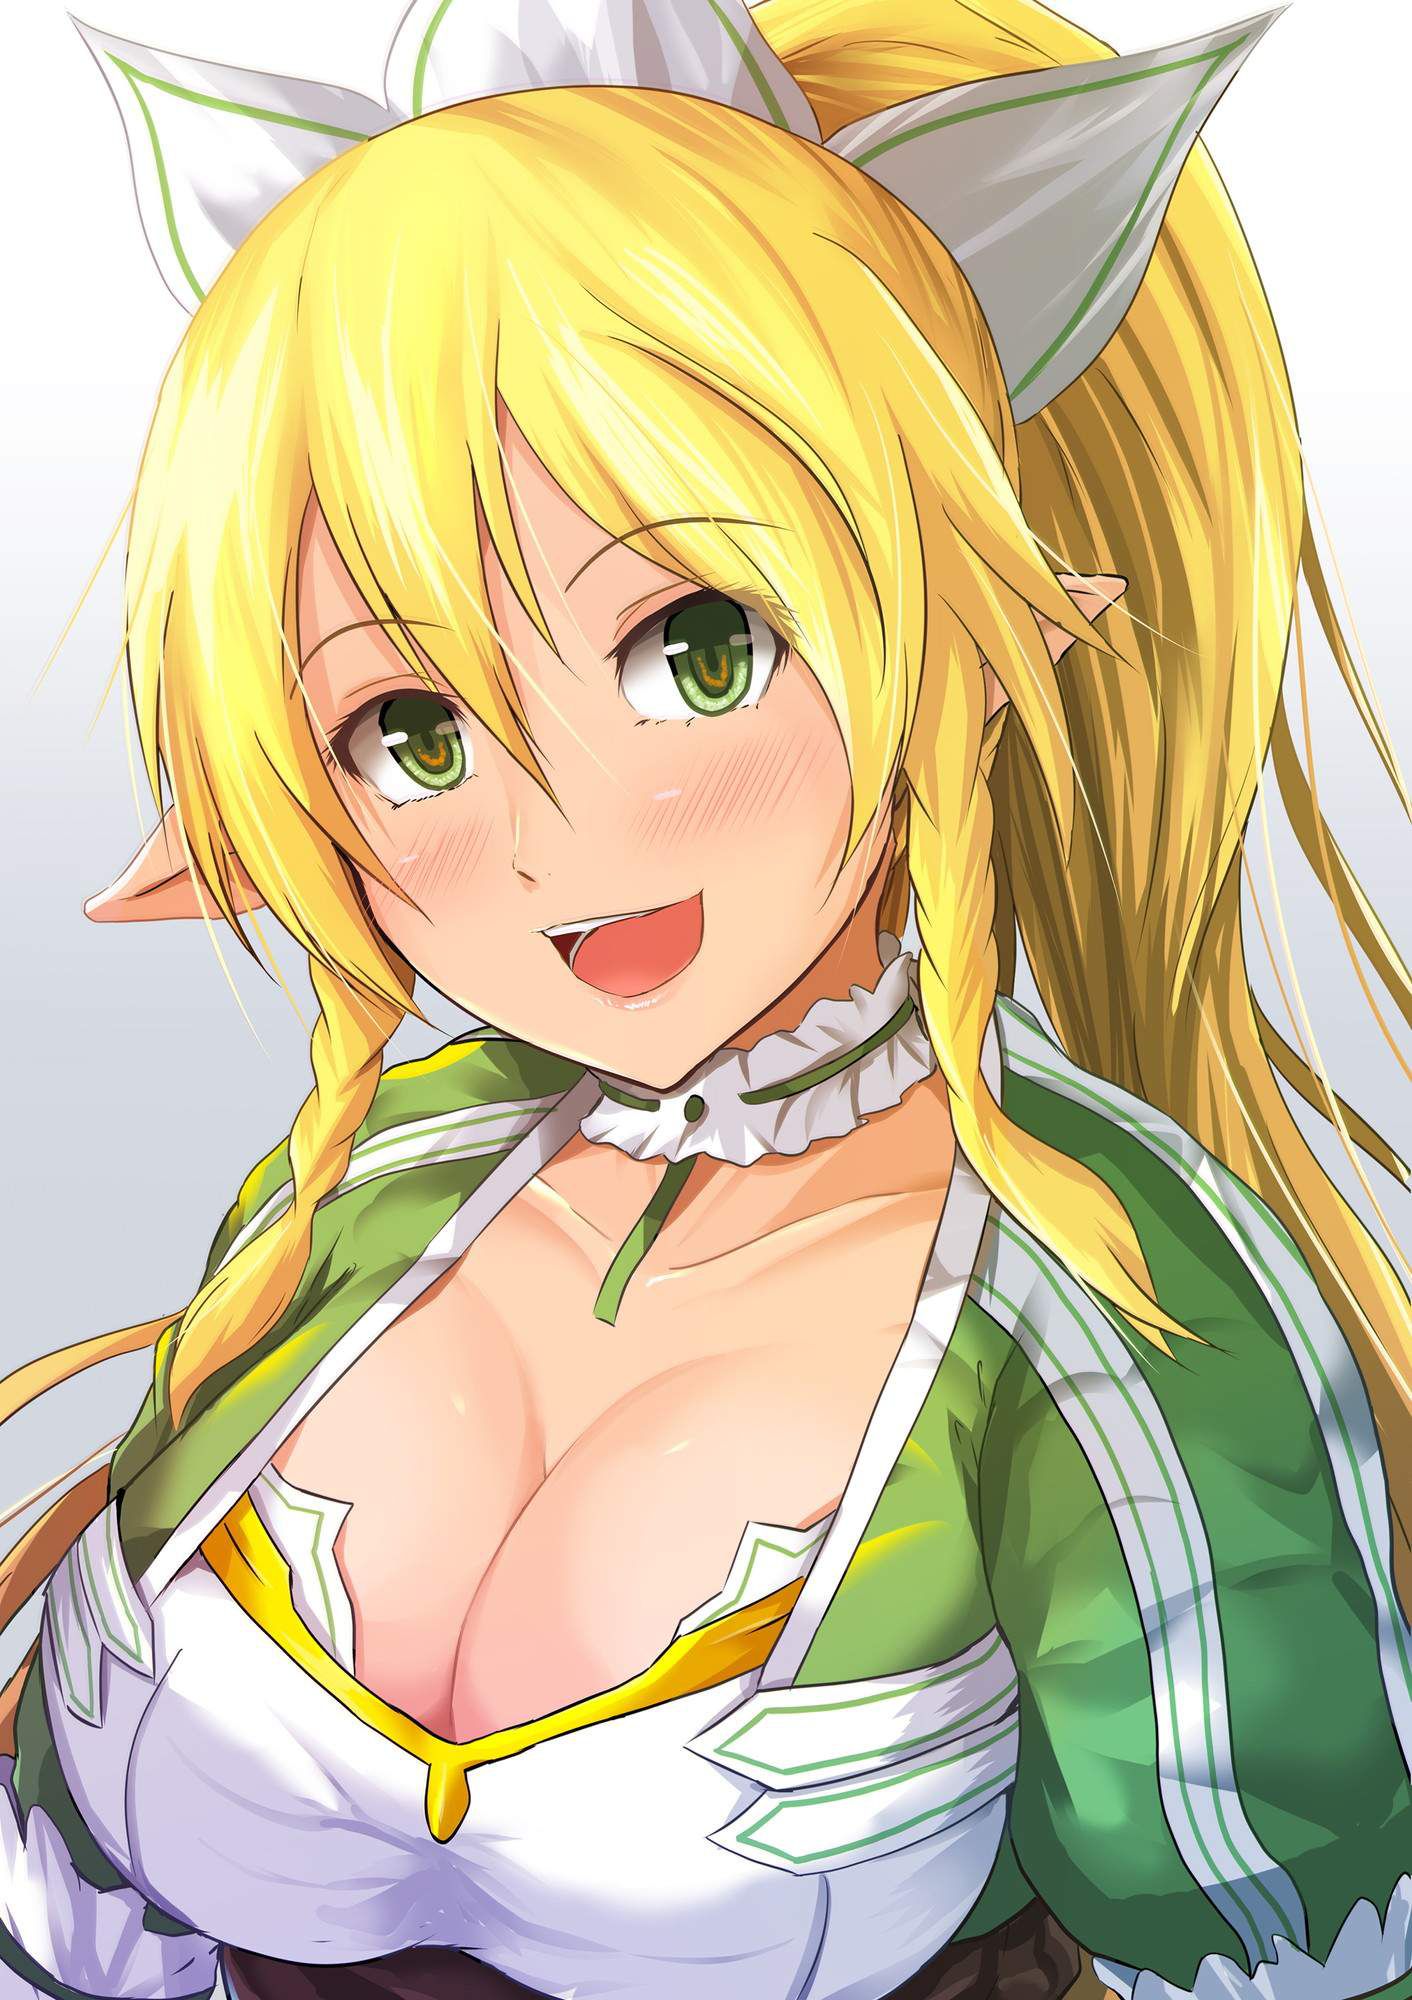 [Sword Art Online] (Kirigaya suguha) Erotic &amp; Moe Image ⑧ [SAO] 9